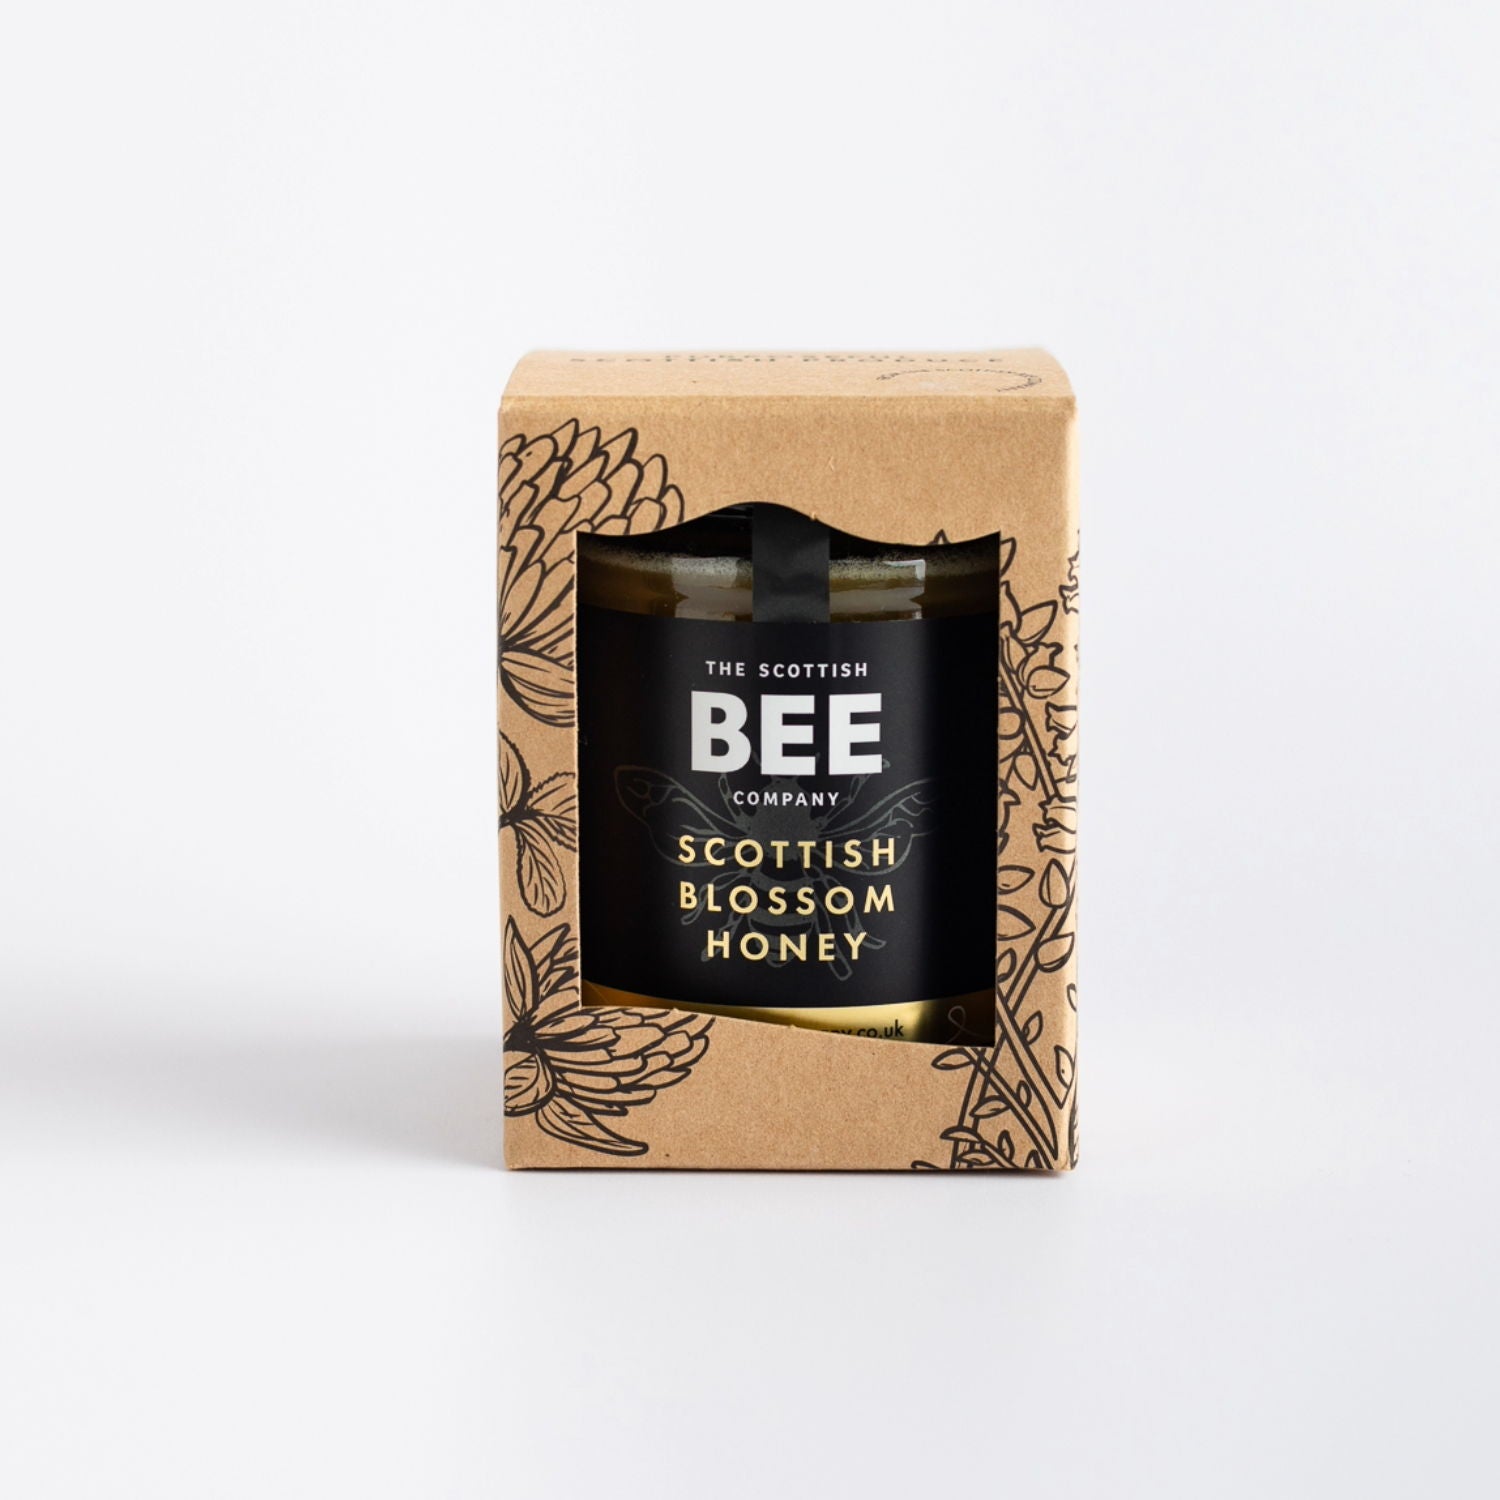 Scottish Blossom Honey 340g in gift box